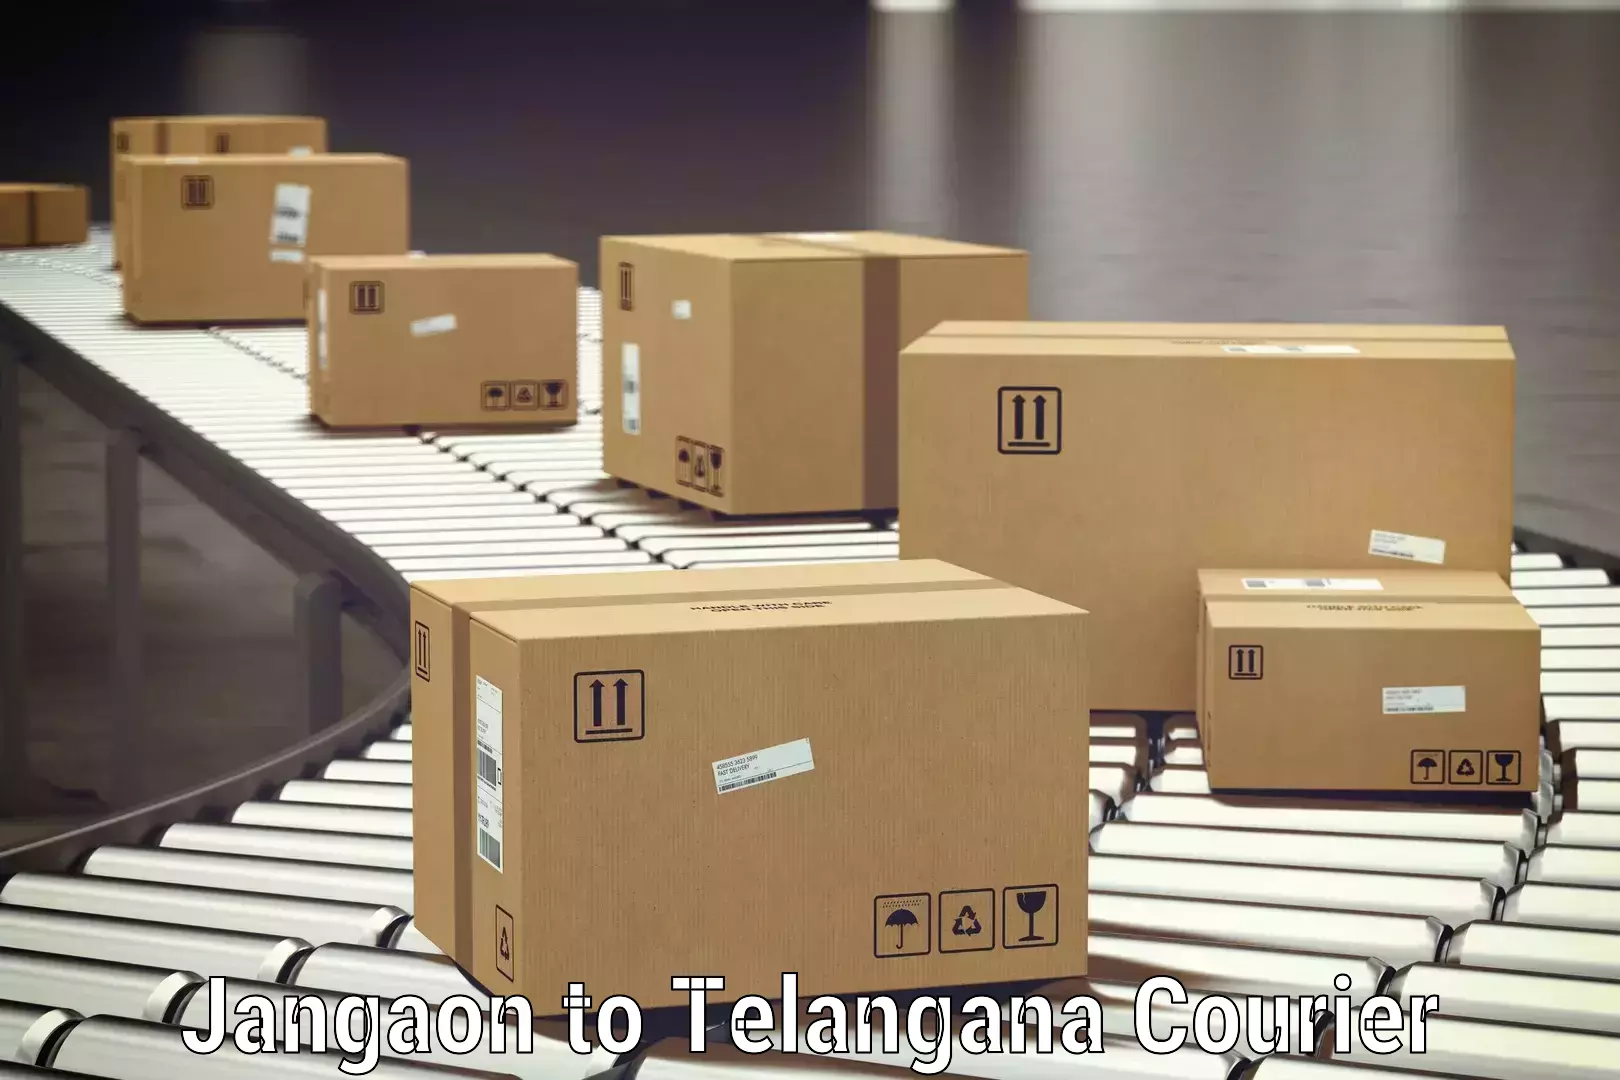 Luggage delivery optimization Jangaon to Mahadevpur